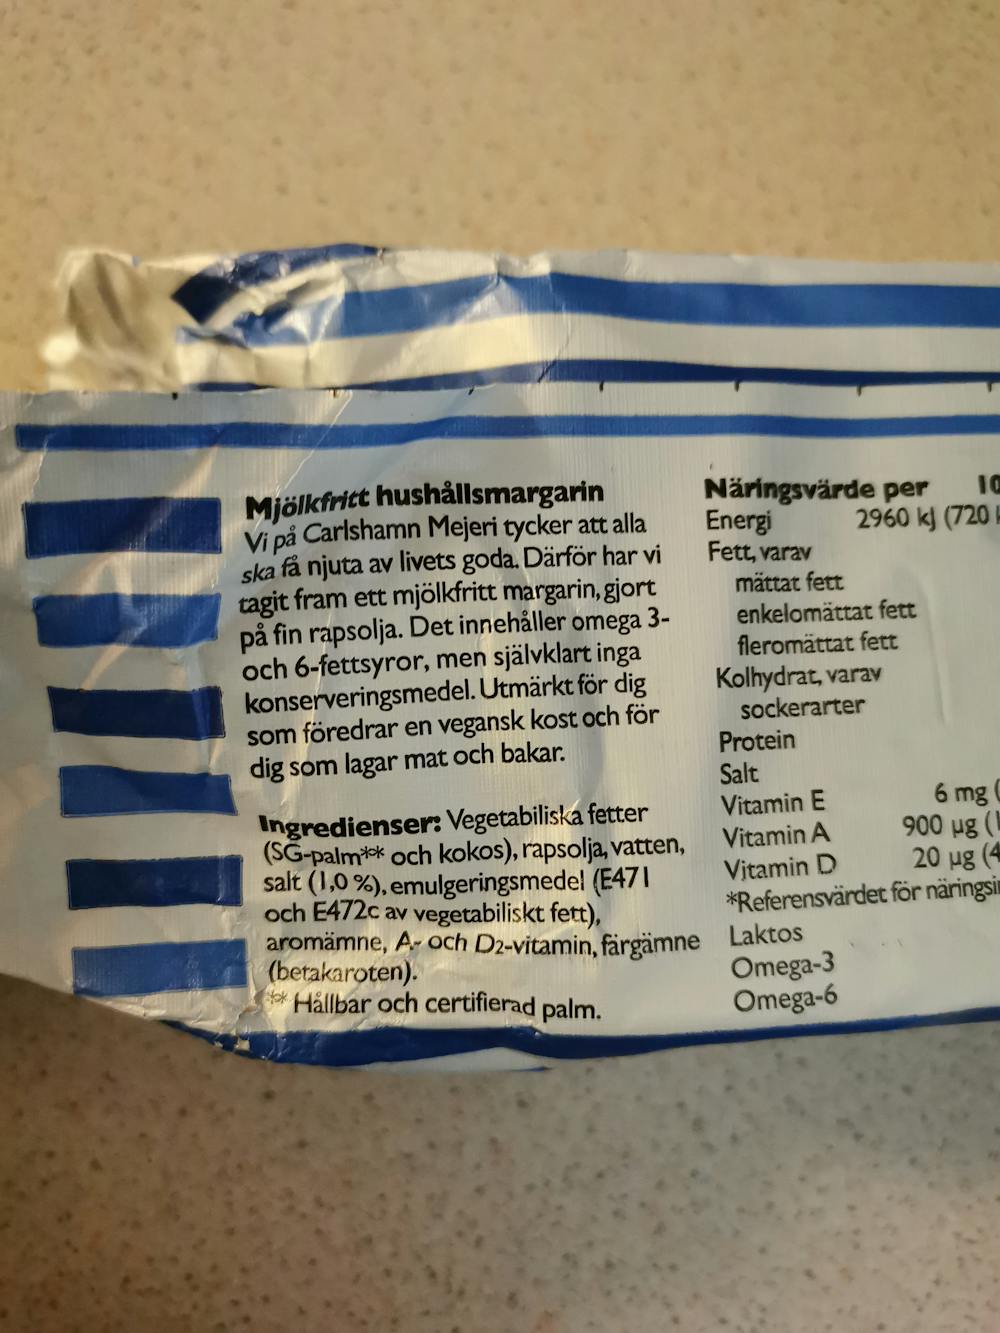 Ingredienslisten til Carlshamn Mjölkefritt hushållsmargarin